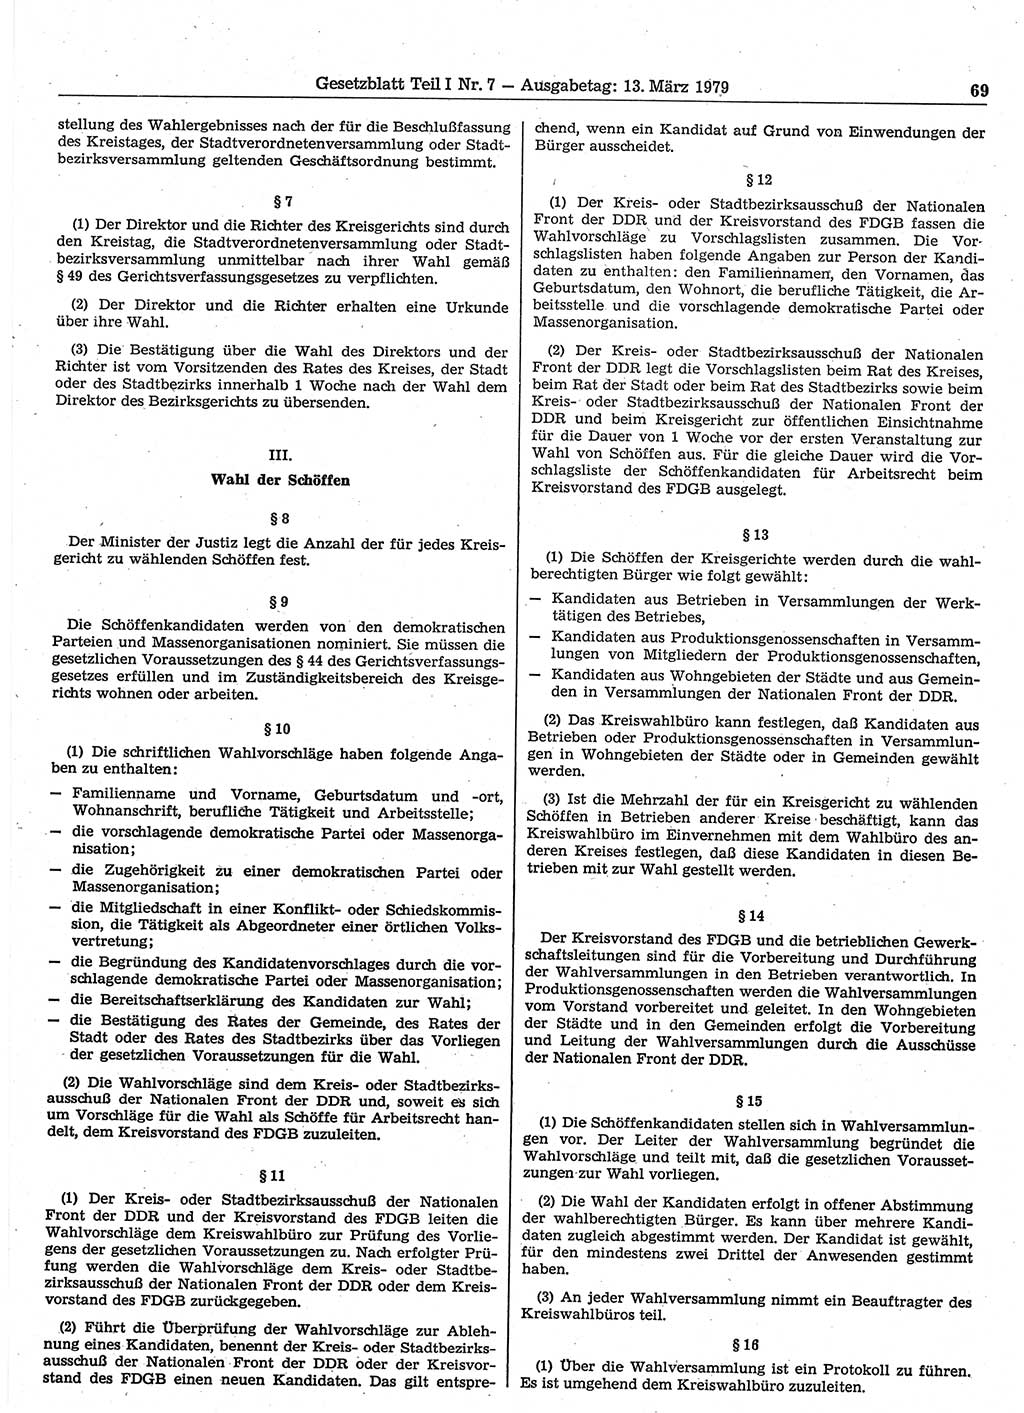 Gesetzblatt (GBl.) der Deutschen Demokratischen Republik (DDR) Teil Ⅰ 1979, Seite 69 (GBl. DDR Ⅰ 1979, S. 69)